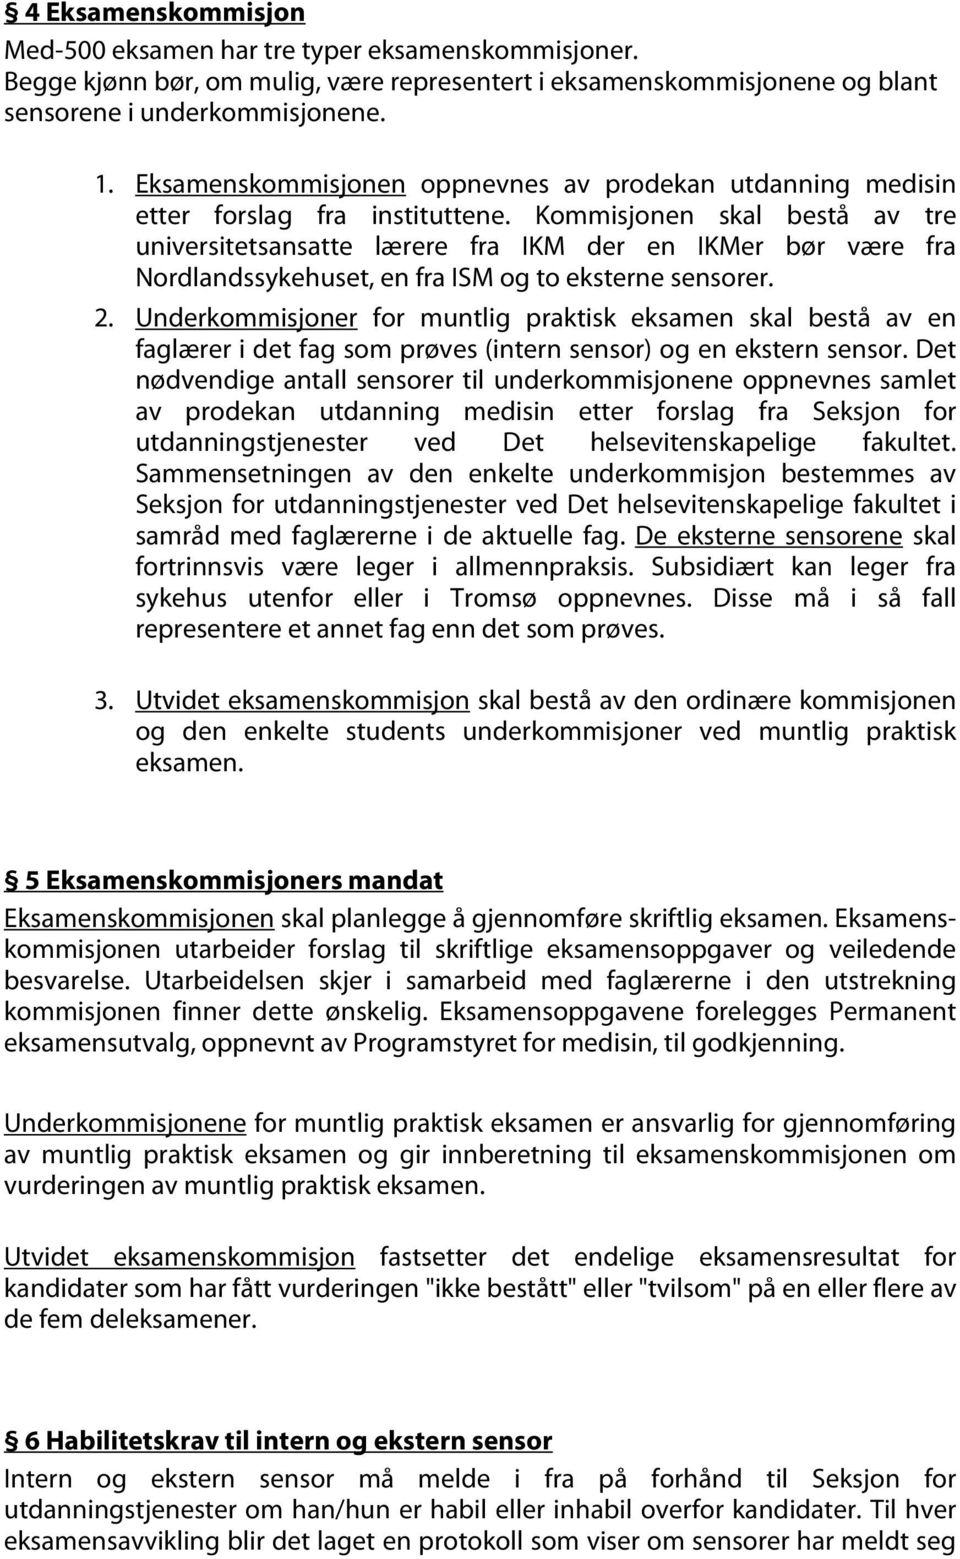 Kommisjonen skal bestå av tre universitetsansatte lærere fra IKM der en IKMer bør være fra Nordlandssykehuset, en fra ISM og to eksterne sensorer. 2.